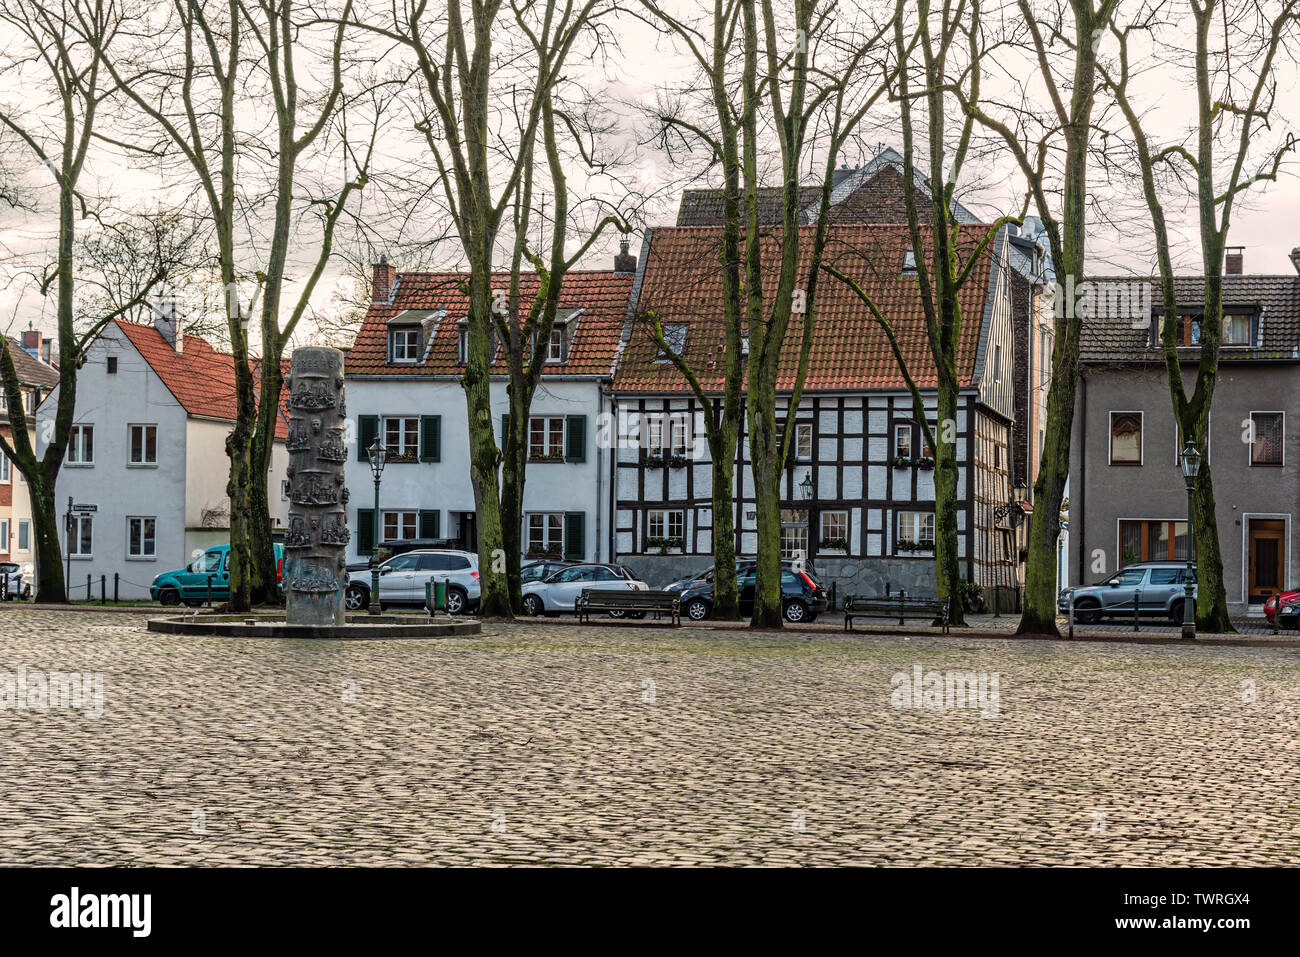 Dusseldorf, Allemagne - Jan 29, 2019 : vue sur les maisons anciennes à la place de l'église paroissiale catholique Margareta à Düsseldorf Gerresheim, Allemagne. Banque D'Images